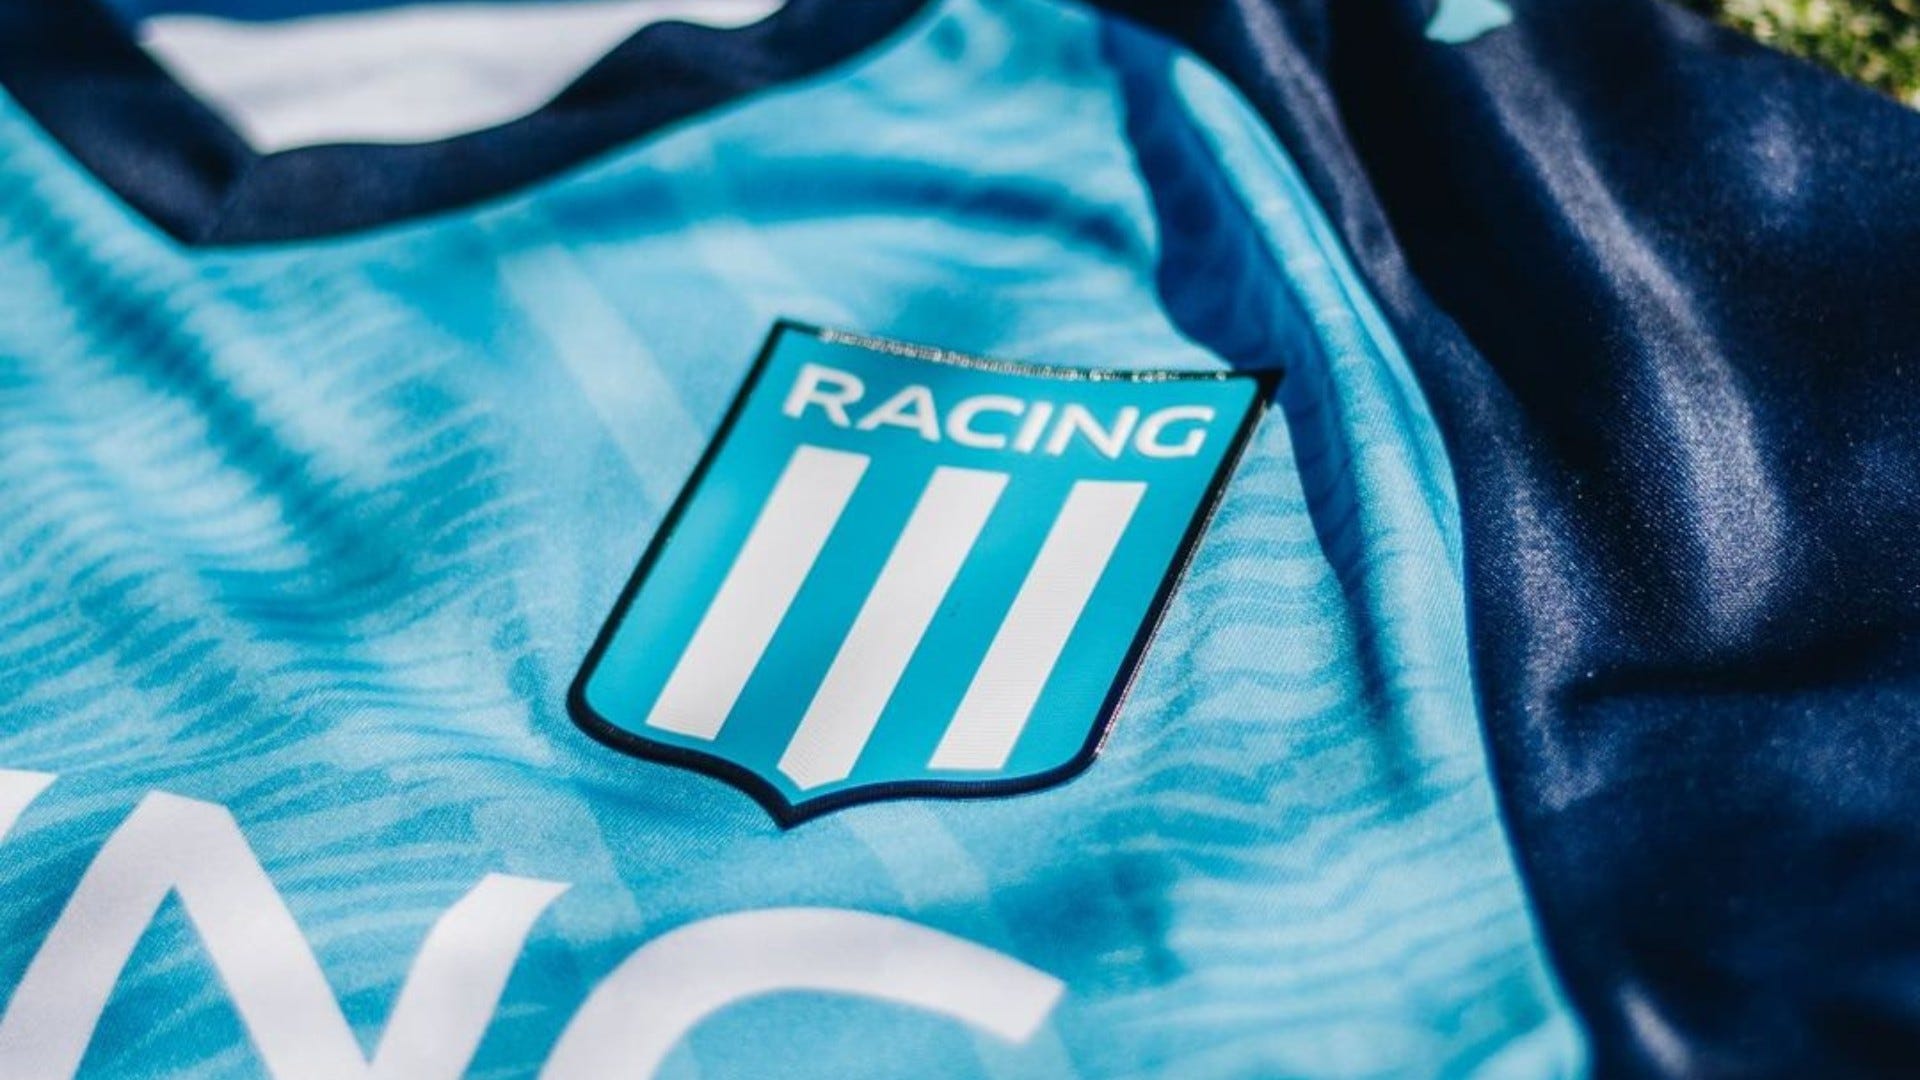 aplausos Realizable Subrayar La camiseta de Racing: marca, contrato, valor y diseños | Goal.com Espana